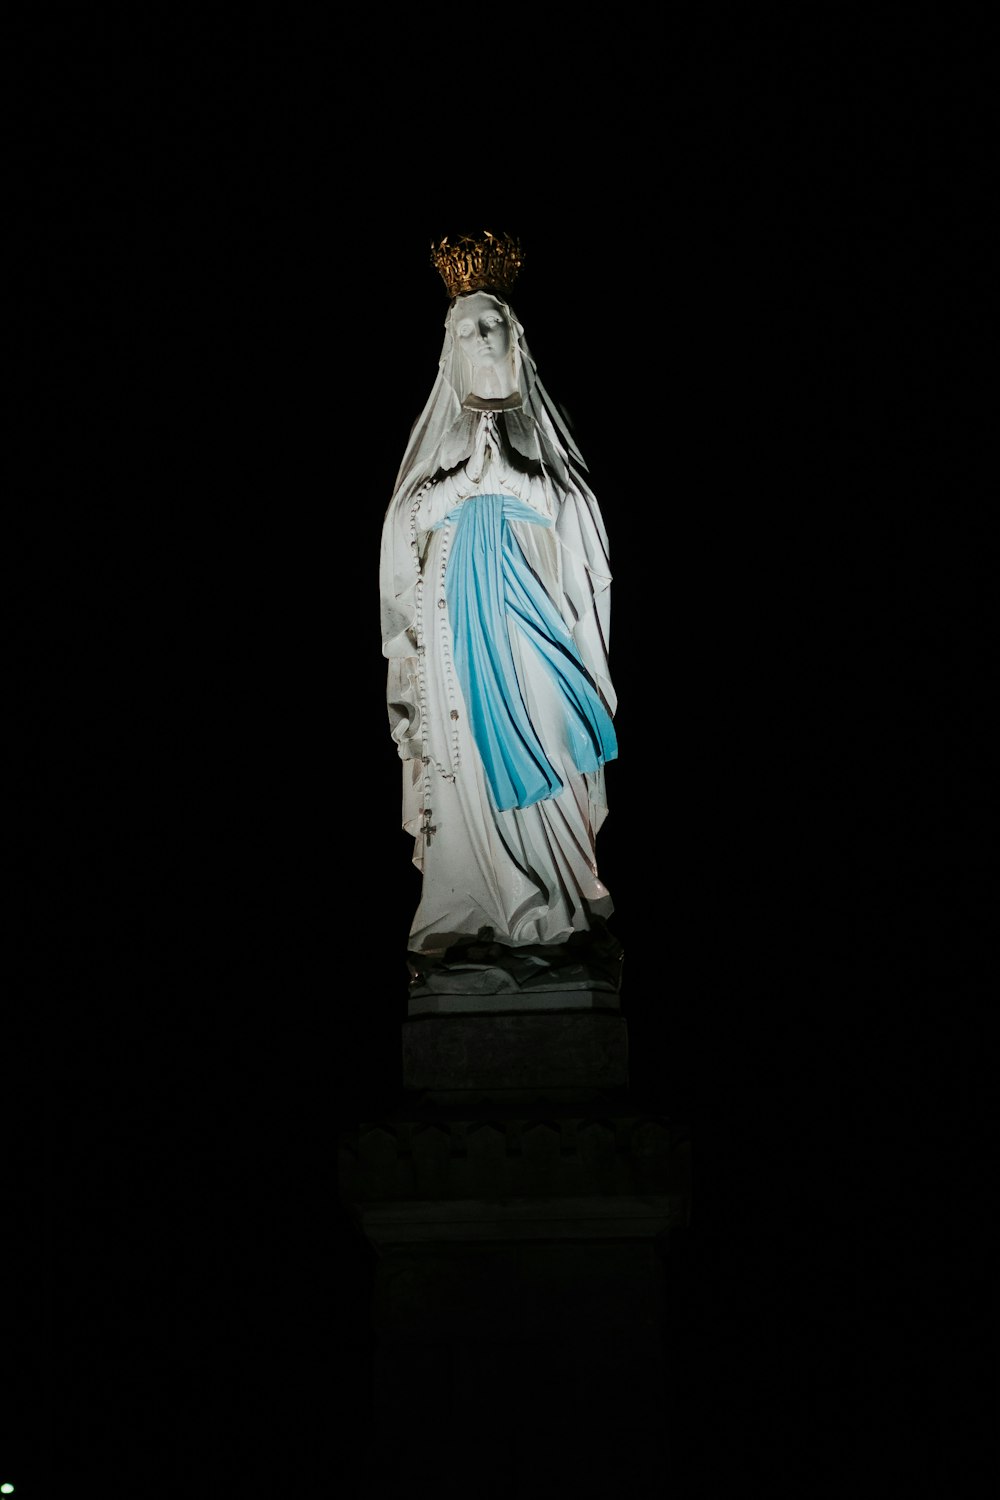 黒い表面の聖母マリア像